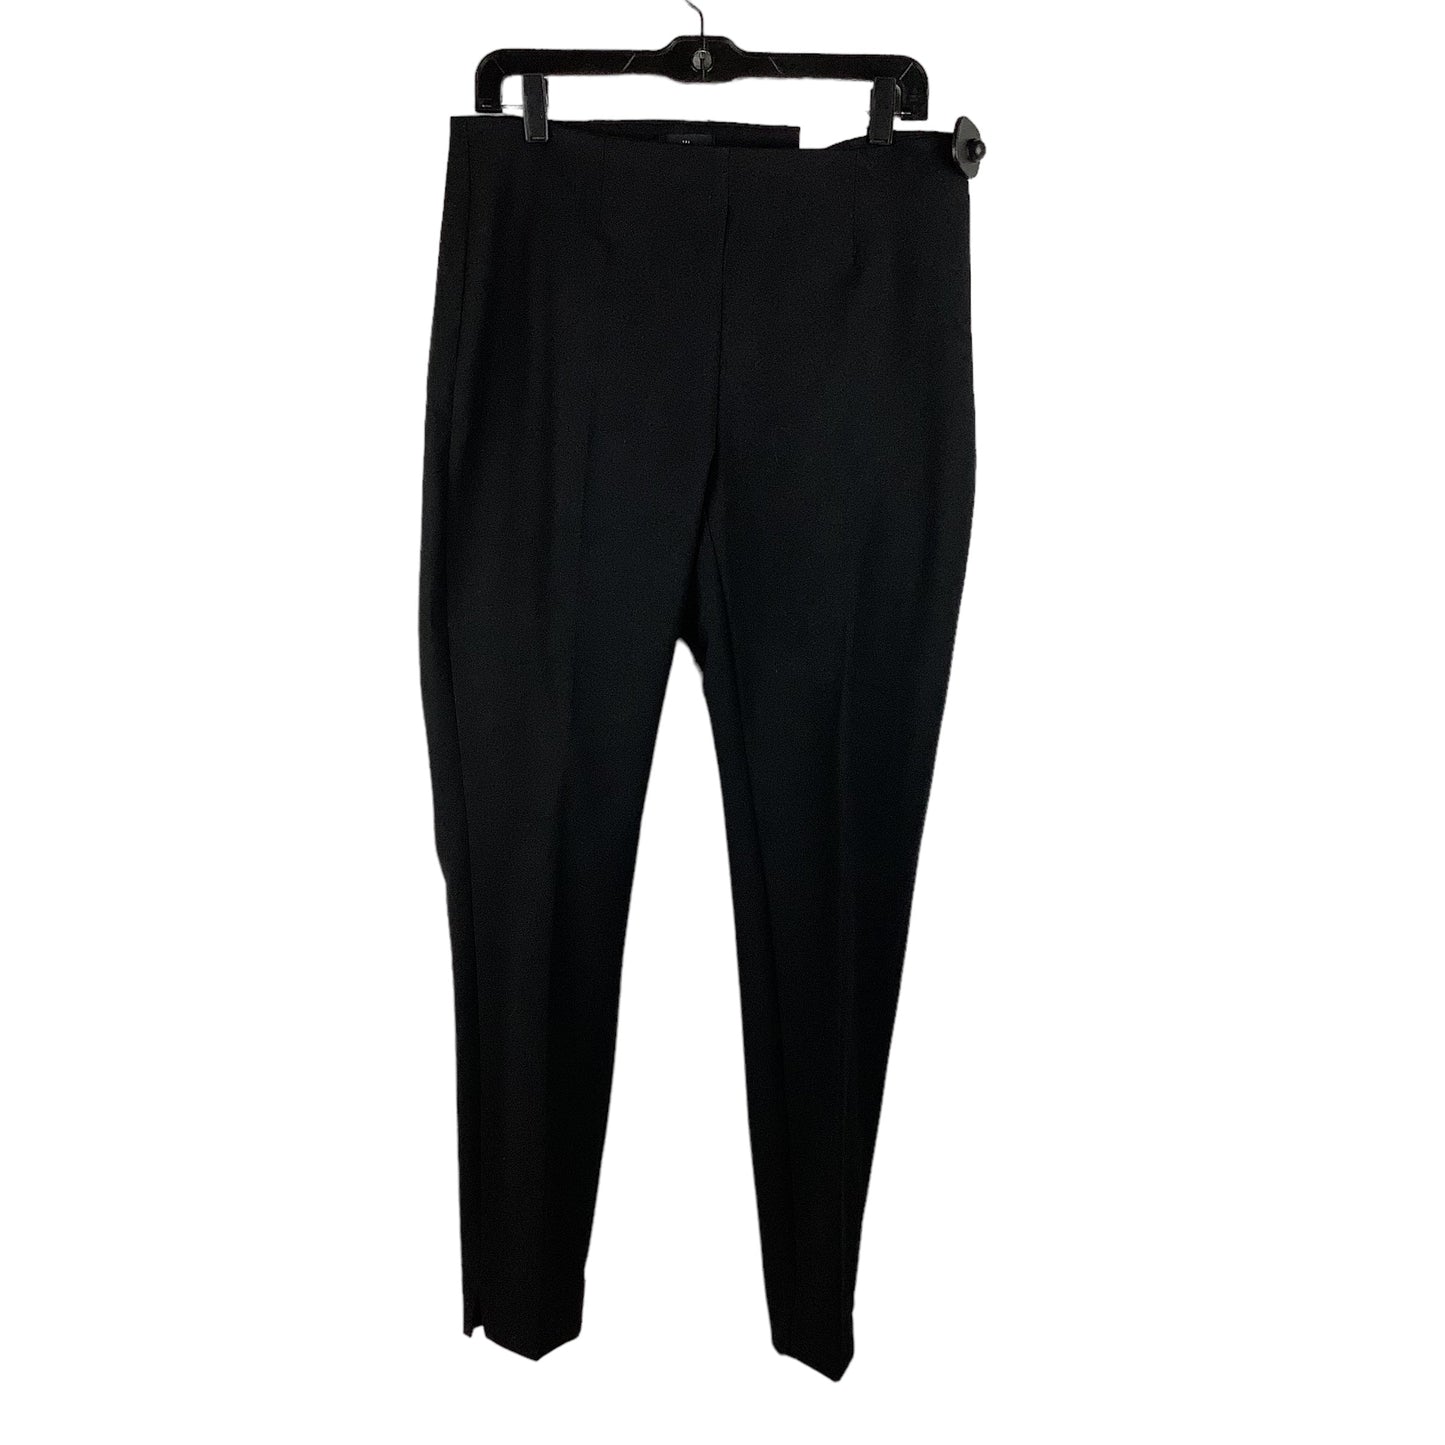 Black Pants Dress Clothes Mentor, Size 8